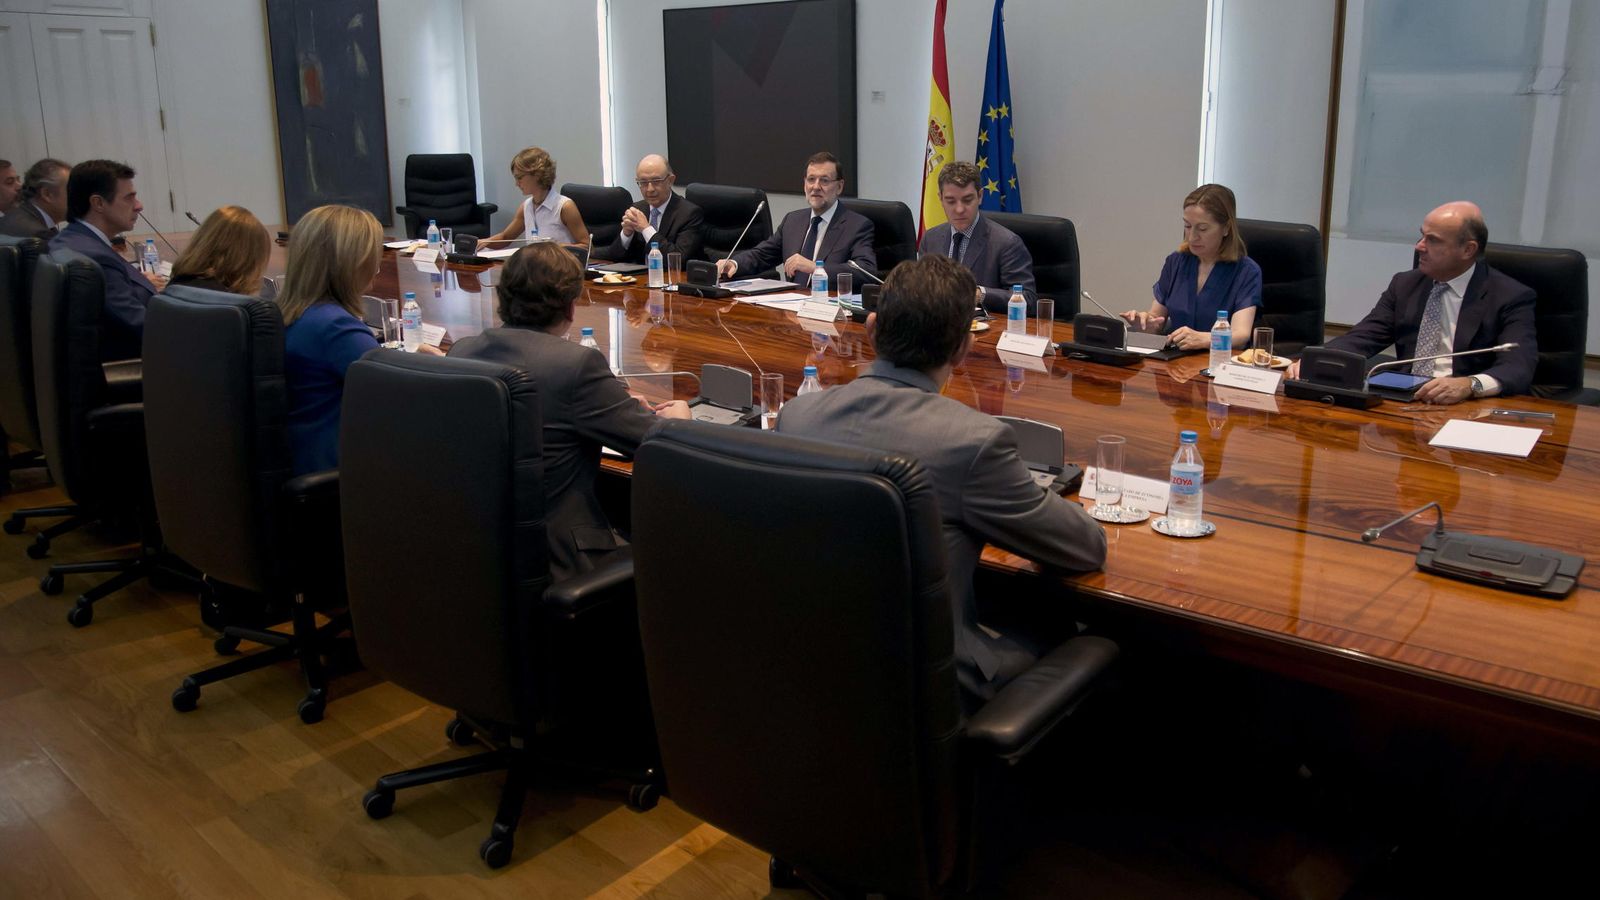 Foto: Fotografía de archivo del presidente del Gobierno, Mariano Rajoy (3i), durante una reunión de la Comisión Delegada de Asuntos Económicos.